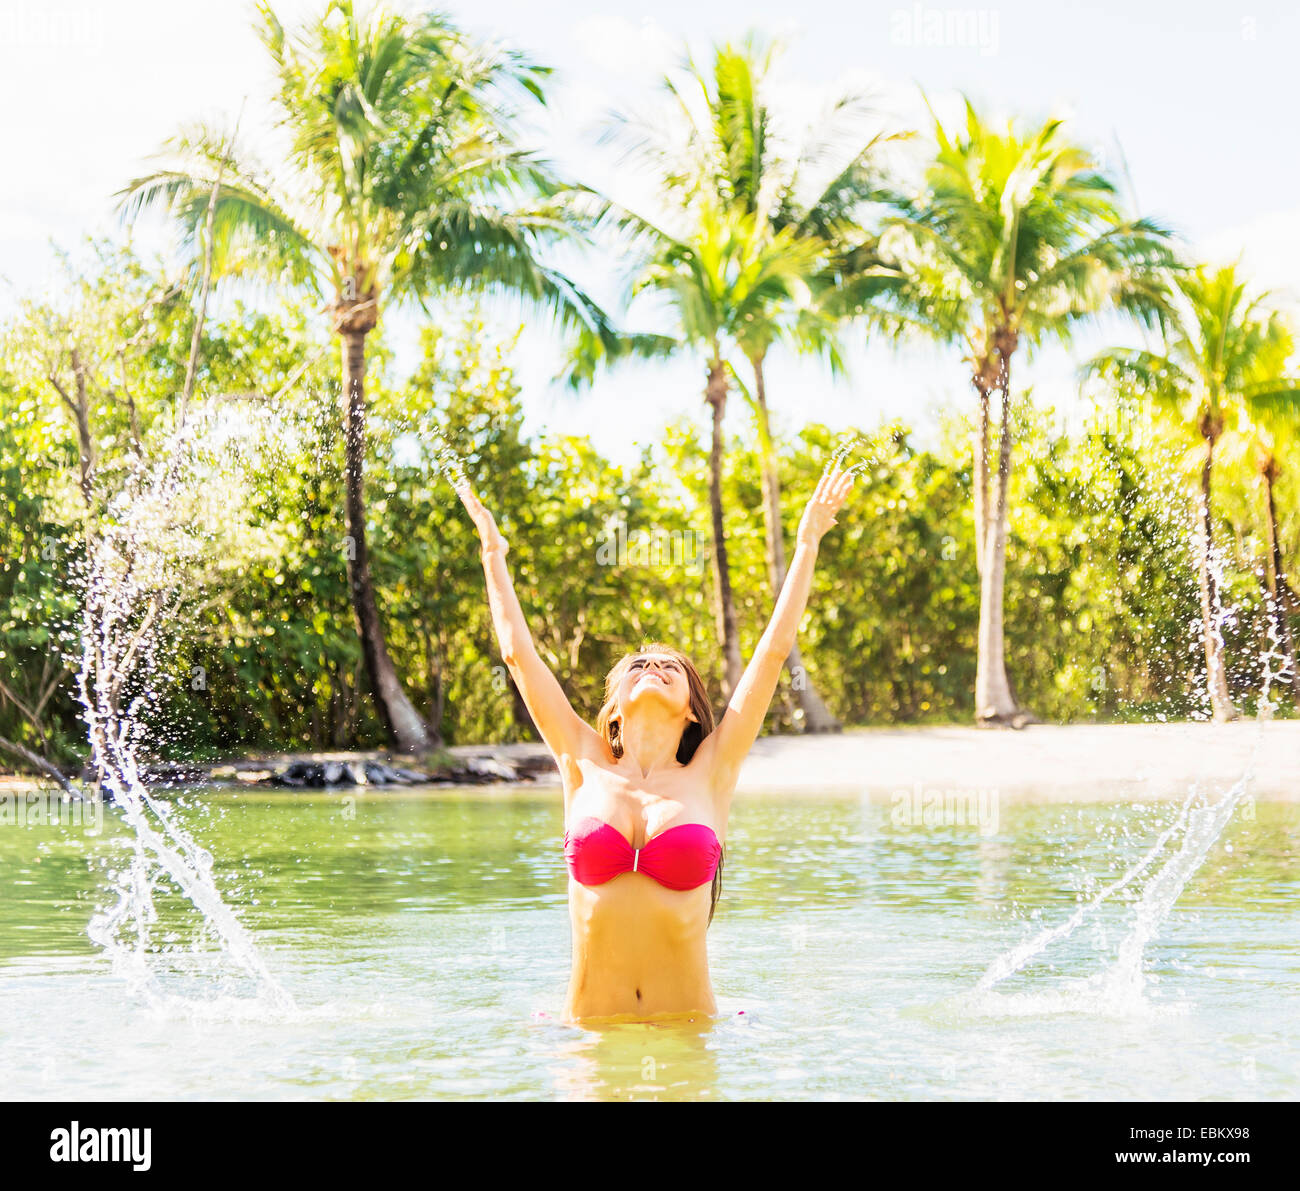 USA, Floride, Jupiter, Portrait of young woman wearing bikini aux projections d'eau dans le lagon tropical Banque D'Images